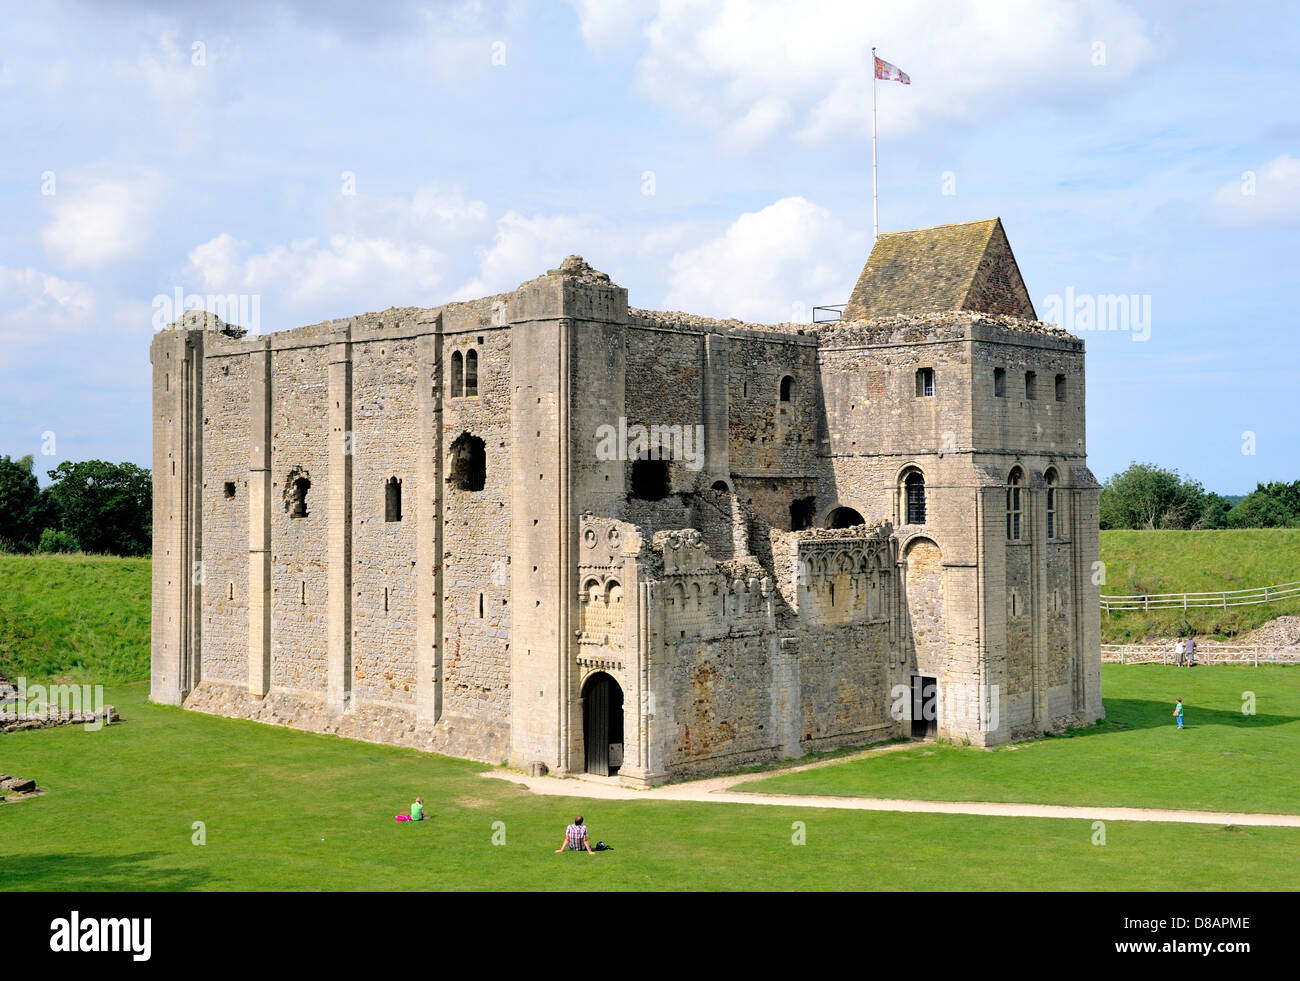 Castle Rising medieval castillo normando, Norfolk, Inglaterra, se remonta a 1140 AD. Mantenga de piedra e interiores de Bailey Foto de stock